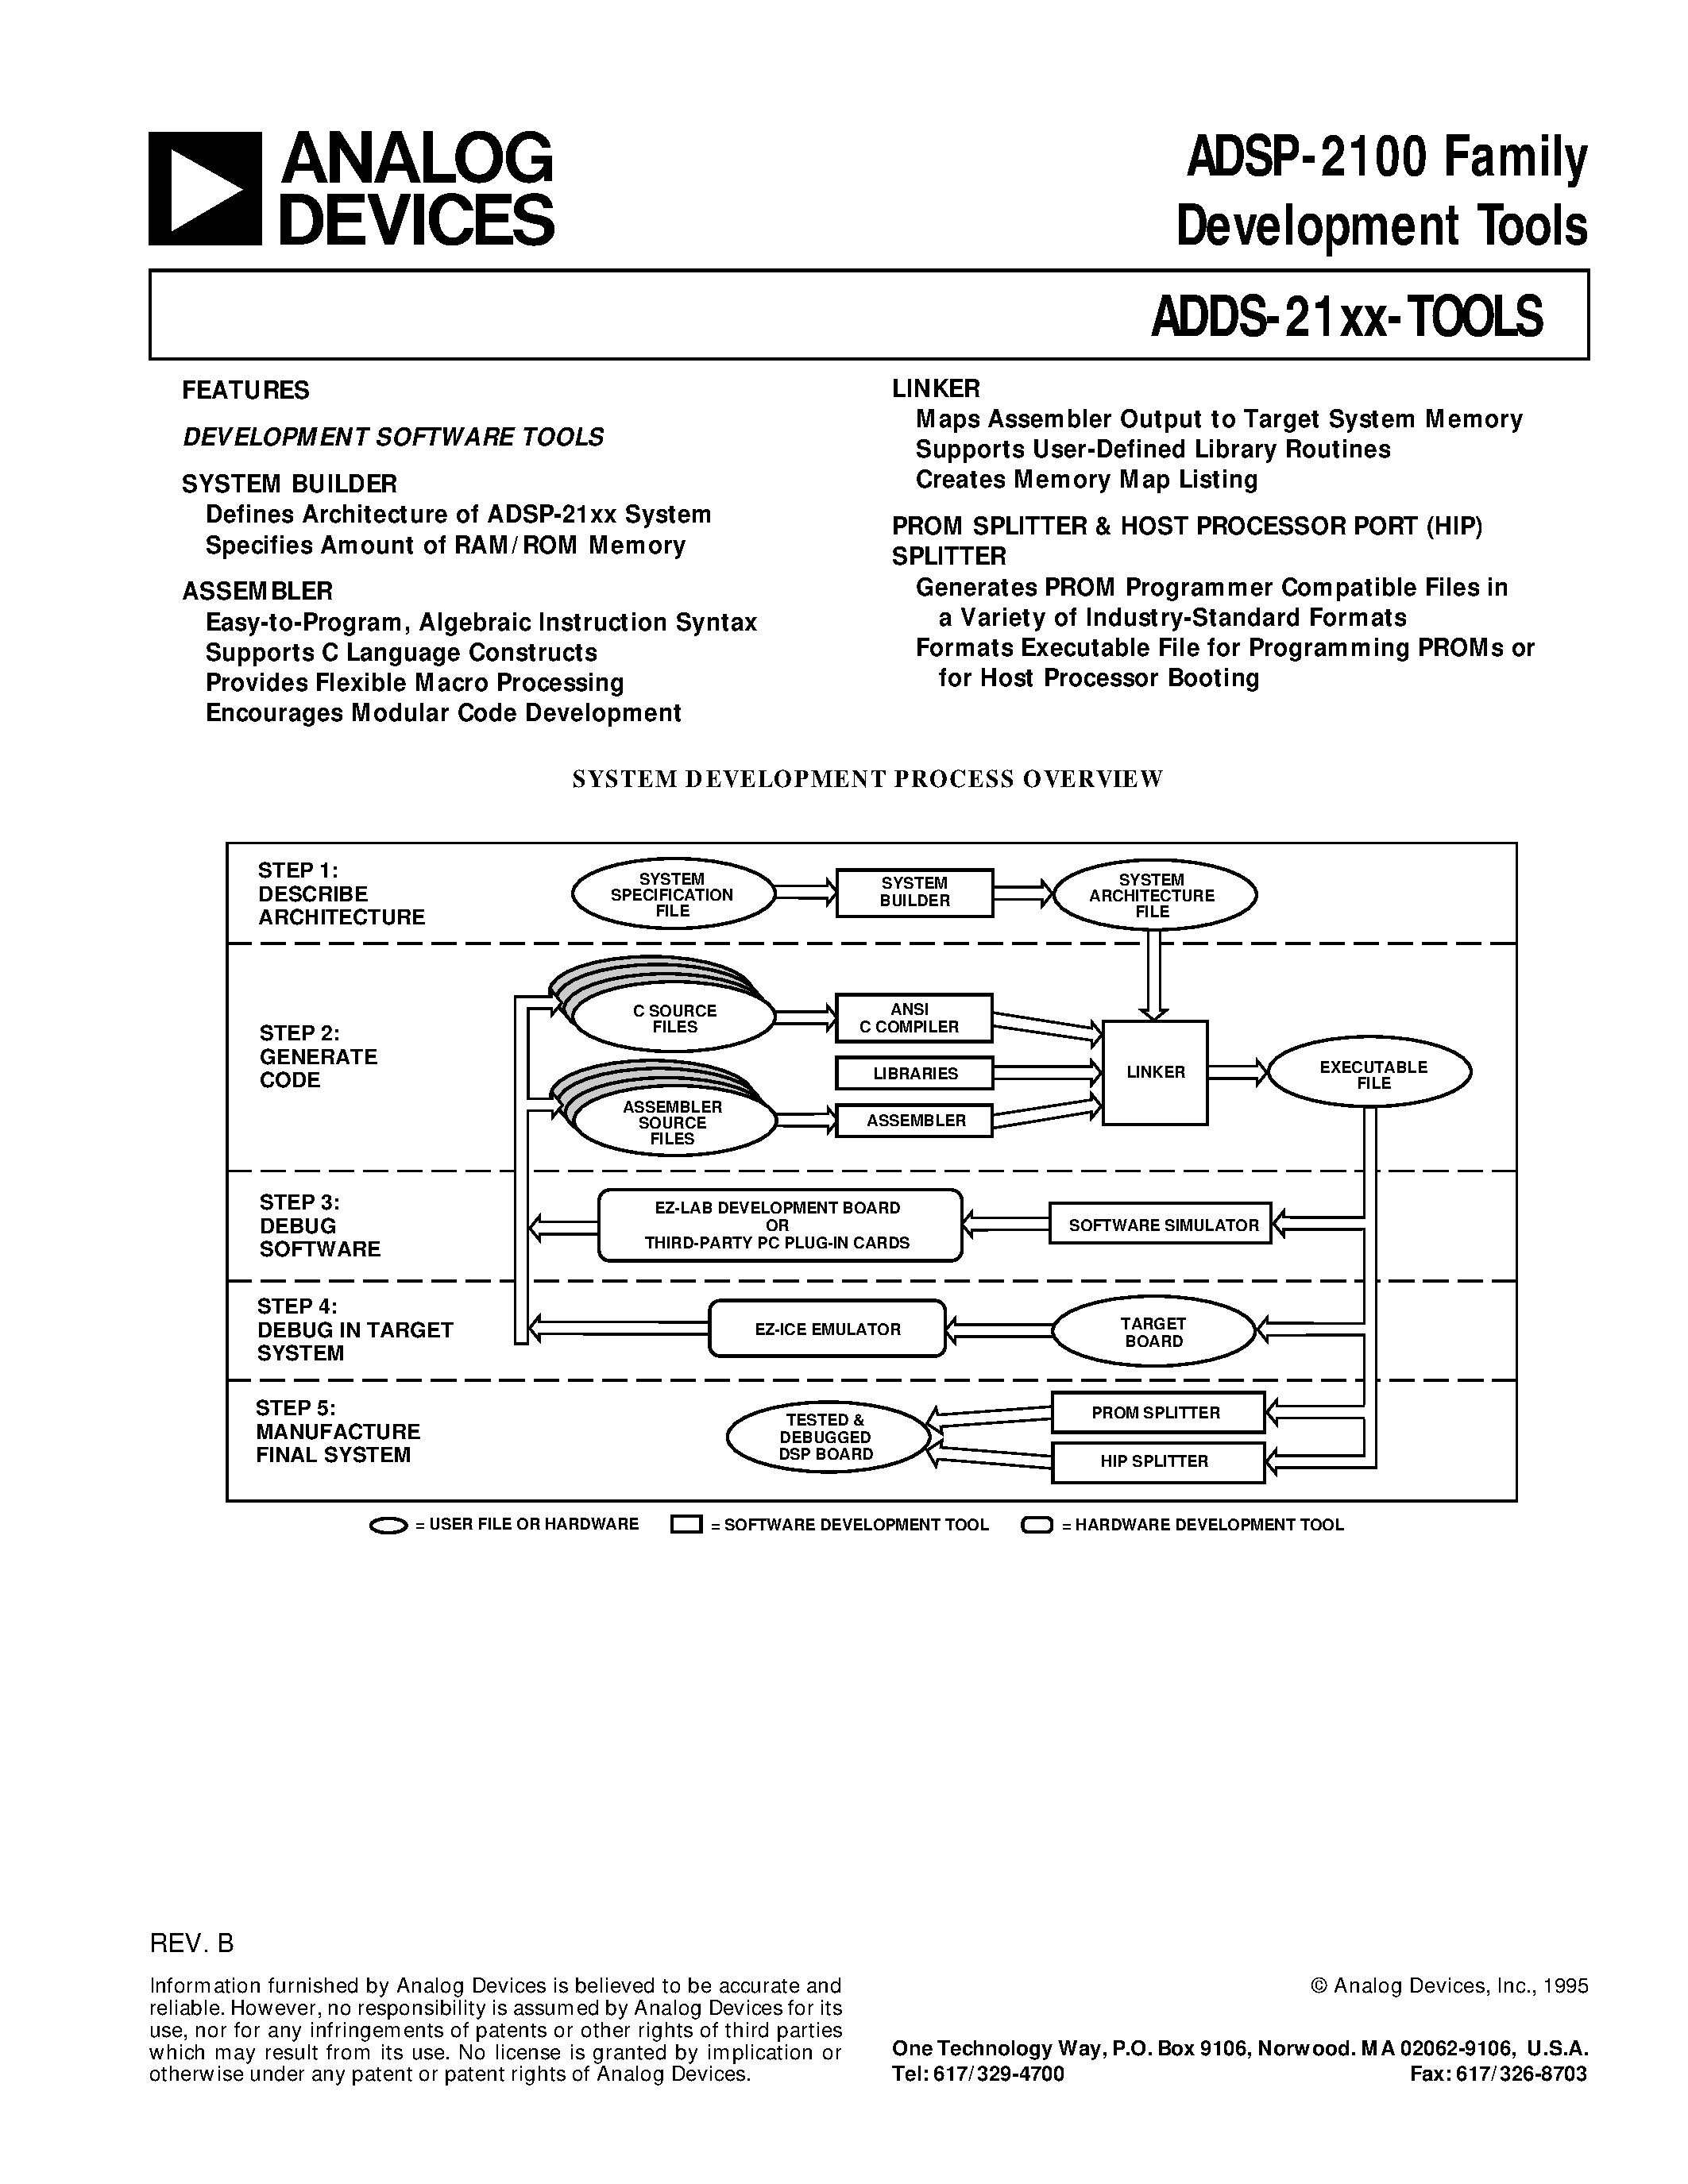 Даташит ADDS-2111-EZ-LAB - ADSP-2100 Family Development Tools страница 1